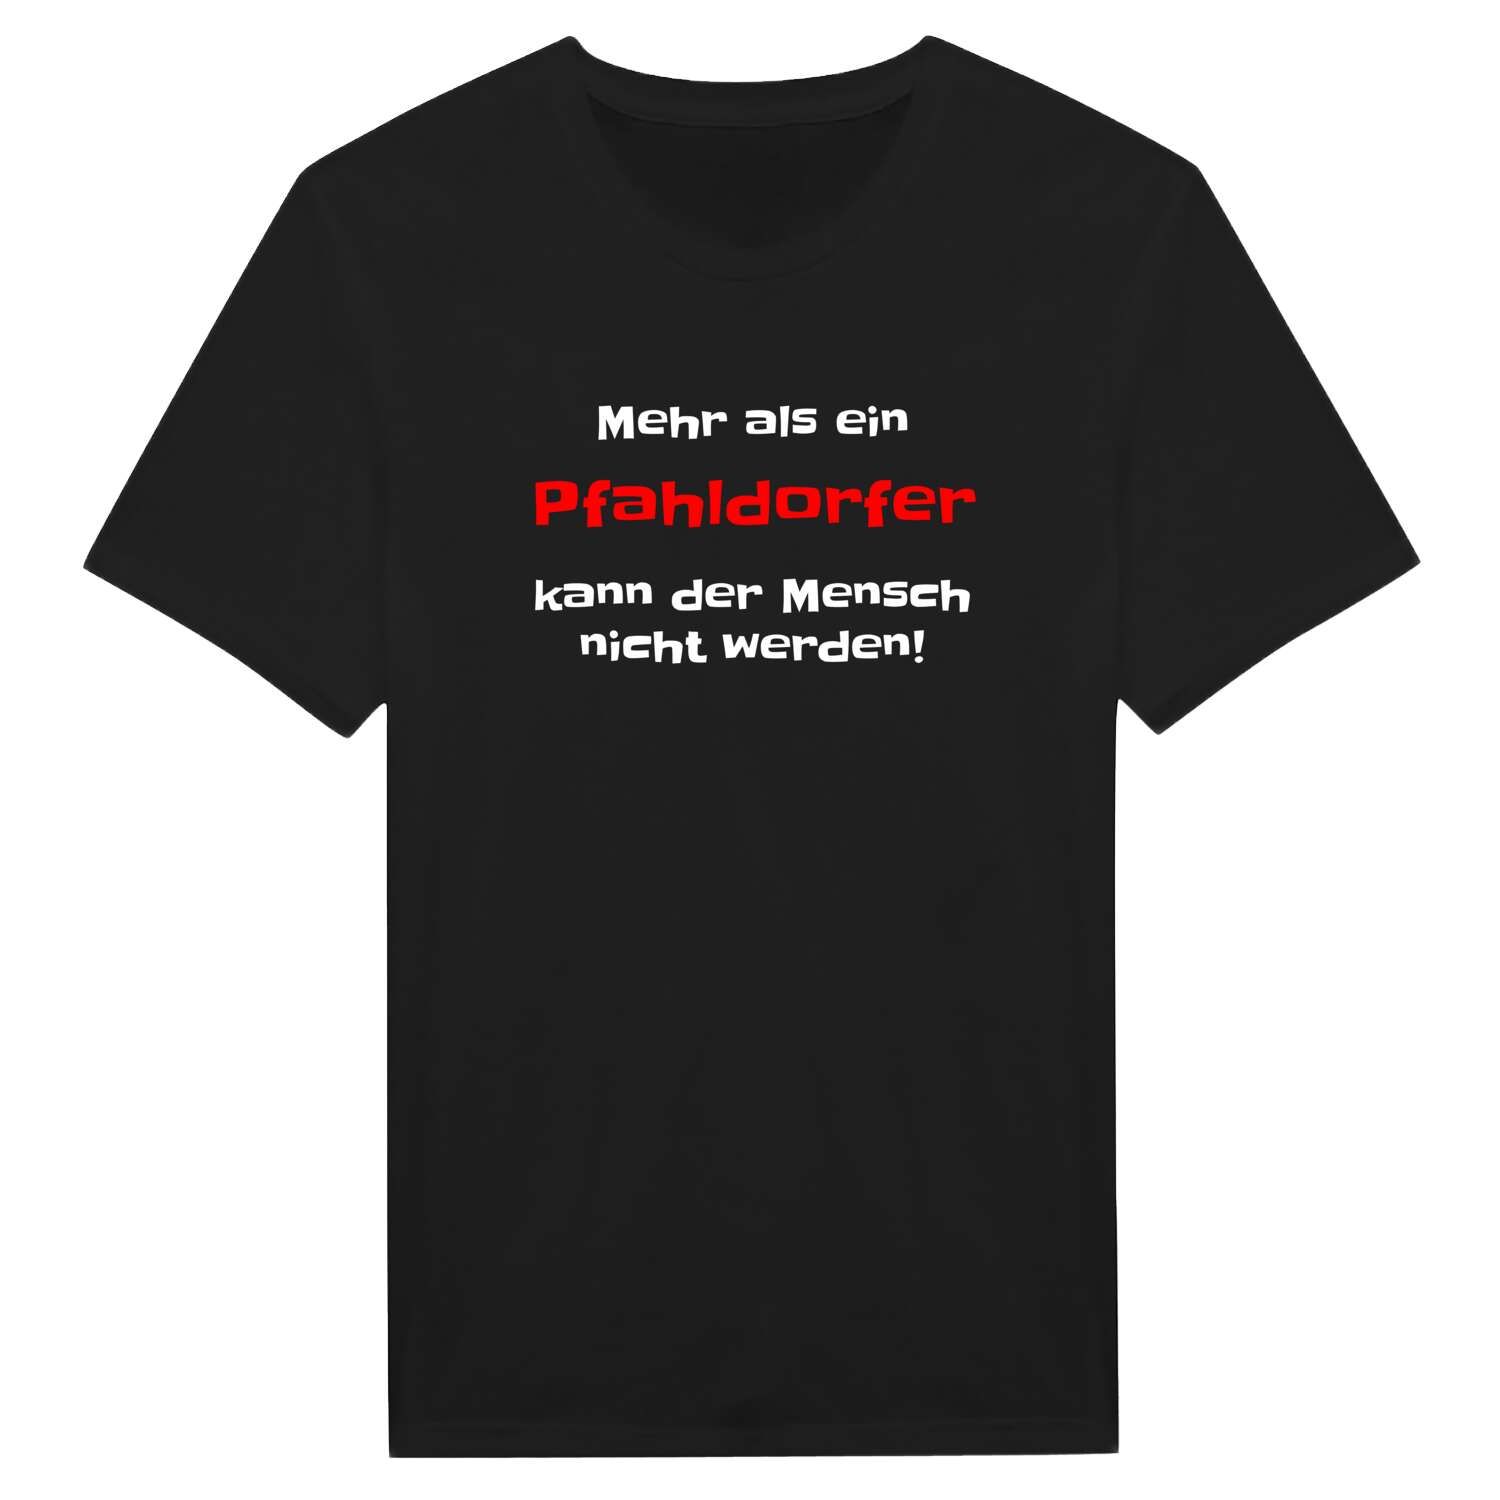 Pfahldorf T-Shirt »Mehr als ein«